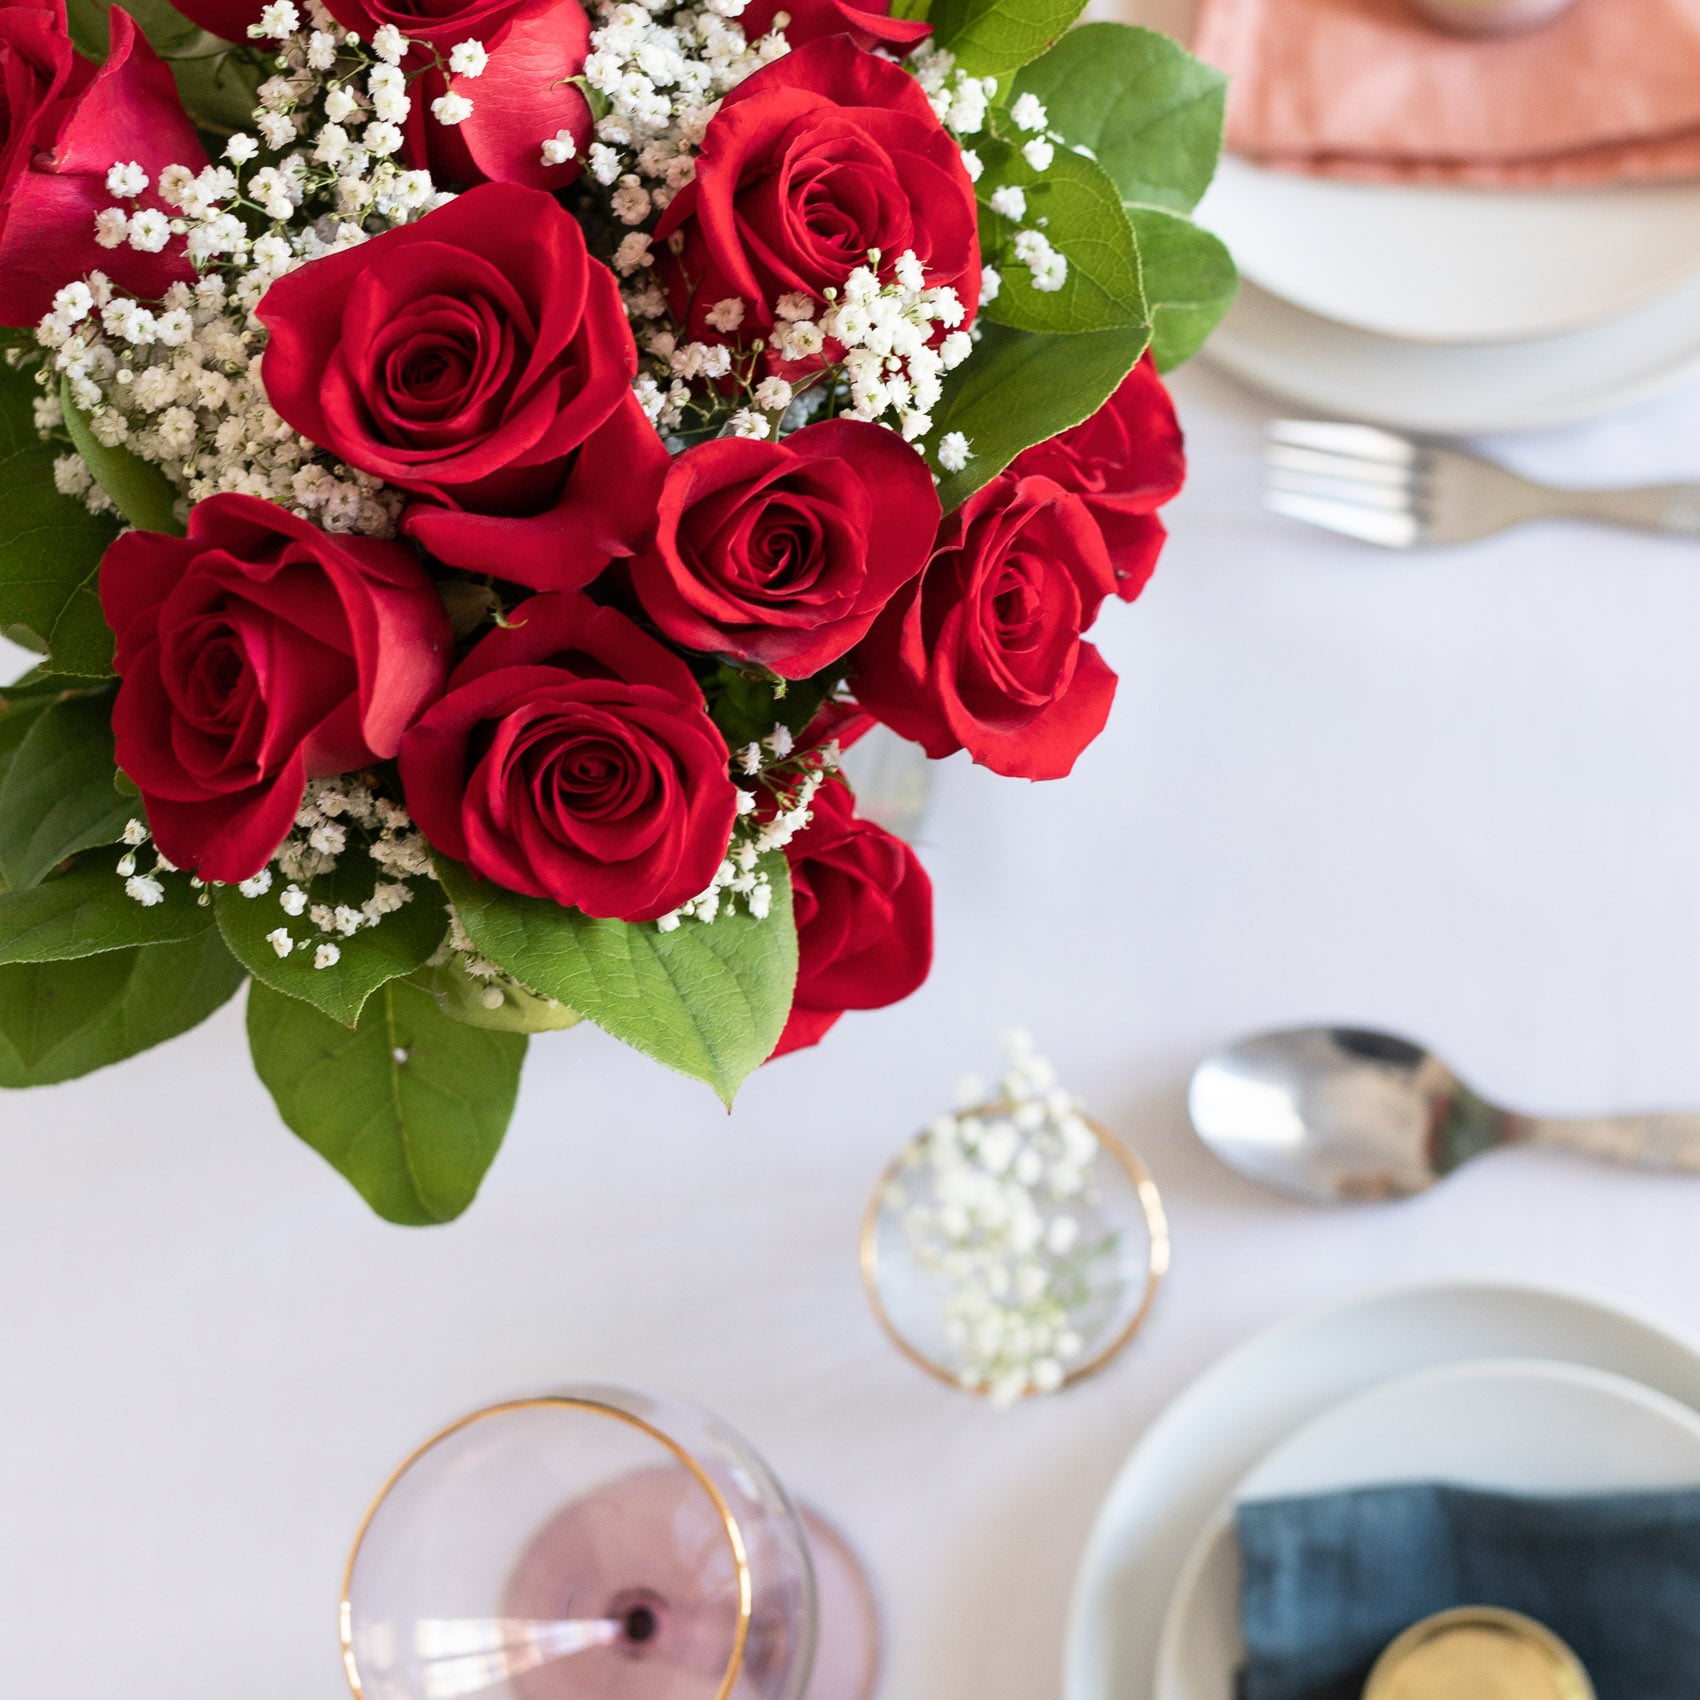 FloraQueen FQ108 12 rosas rojas 28012019 7 web min Las 10 flores más románticas para San Valentín 2019 12